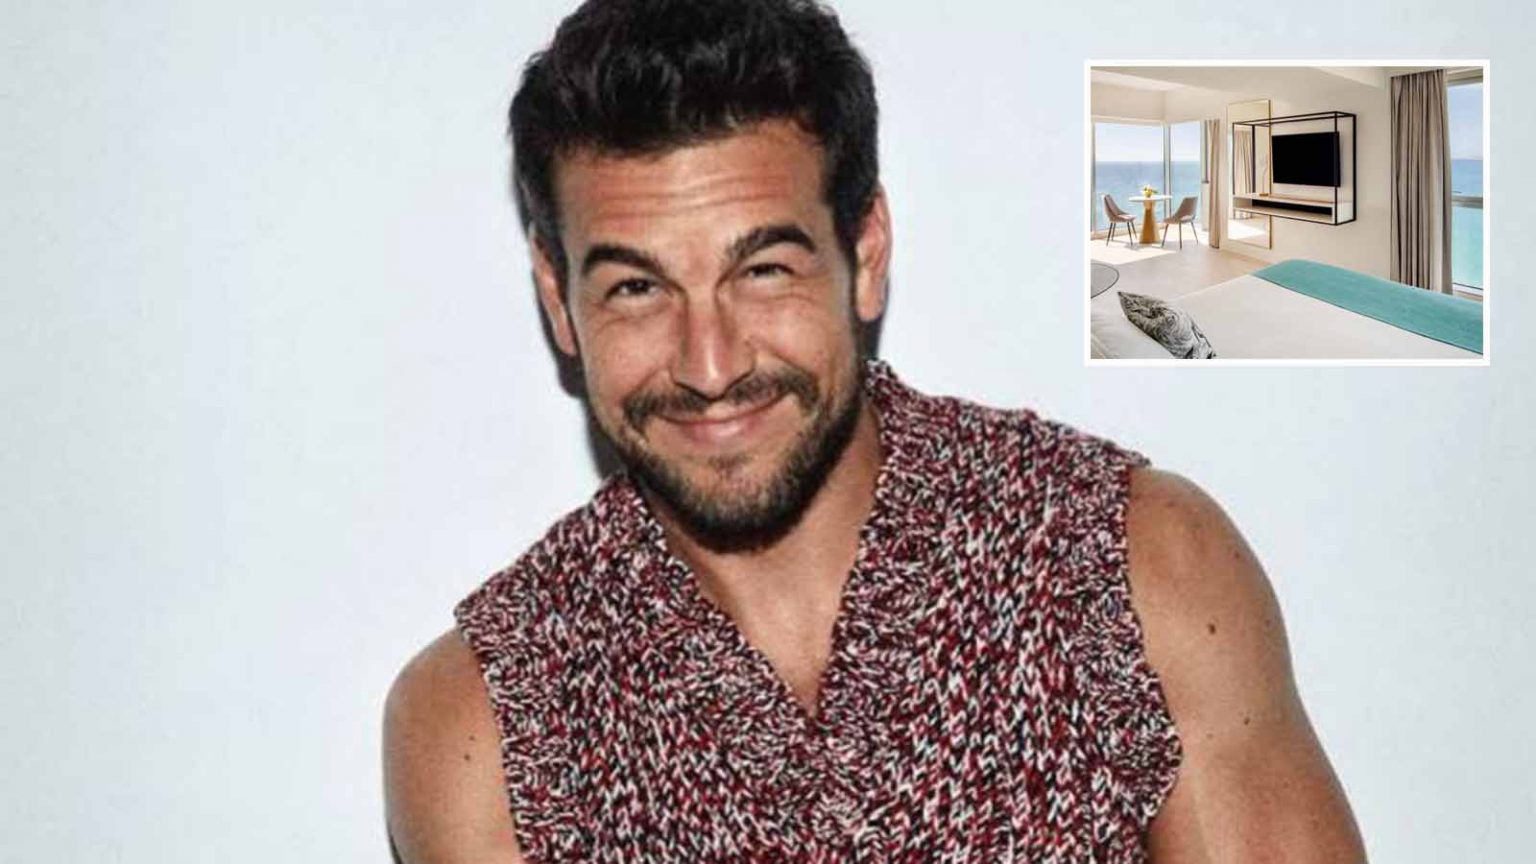 Mario Casas y su escapada familiar a Lanzarote en un hotel a 300 euros la noche